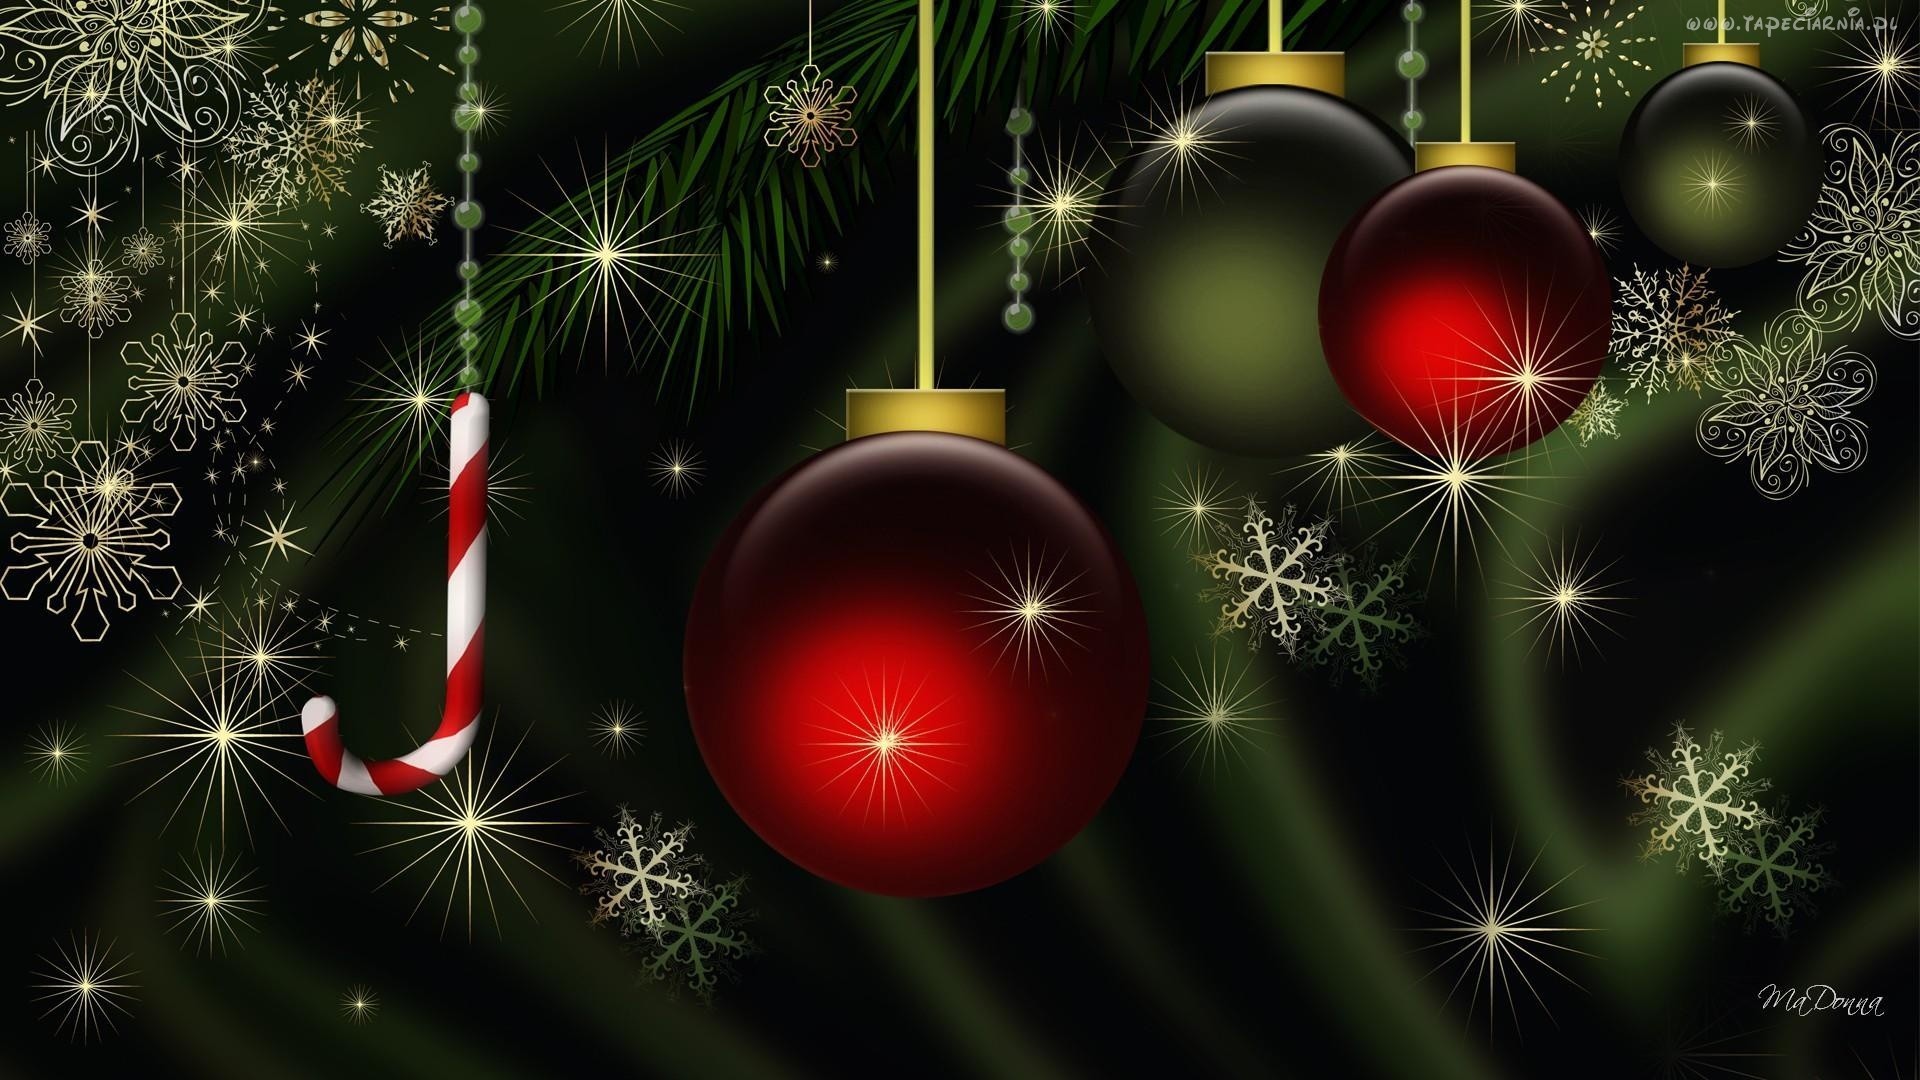 schwarze weihnachtstapete,weihnachtsschmuck,weihnachtsdekoration,weihnachten,weihnachtsbaum,baum